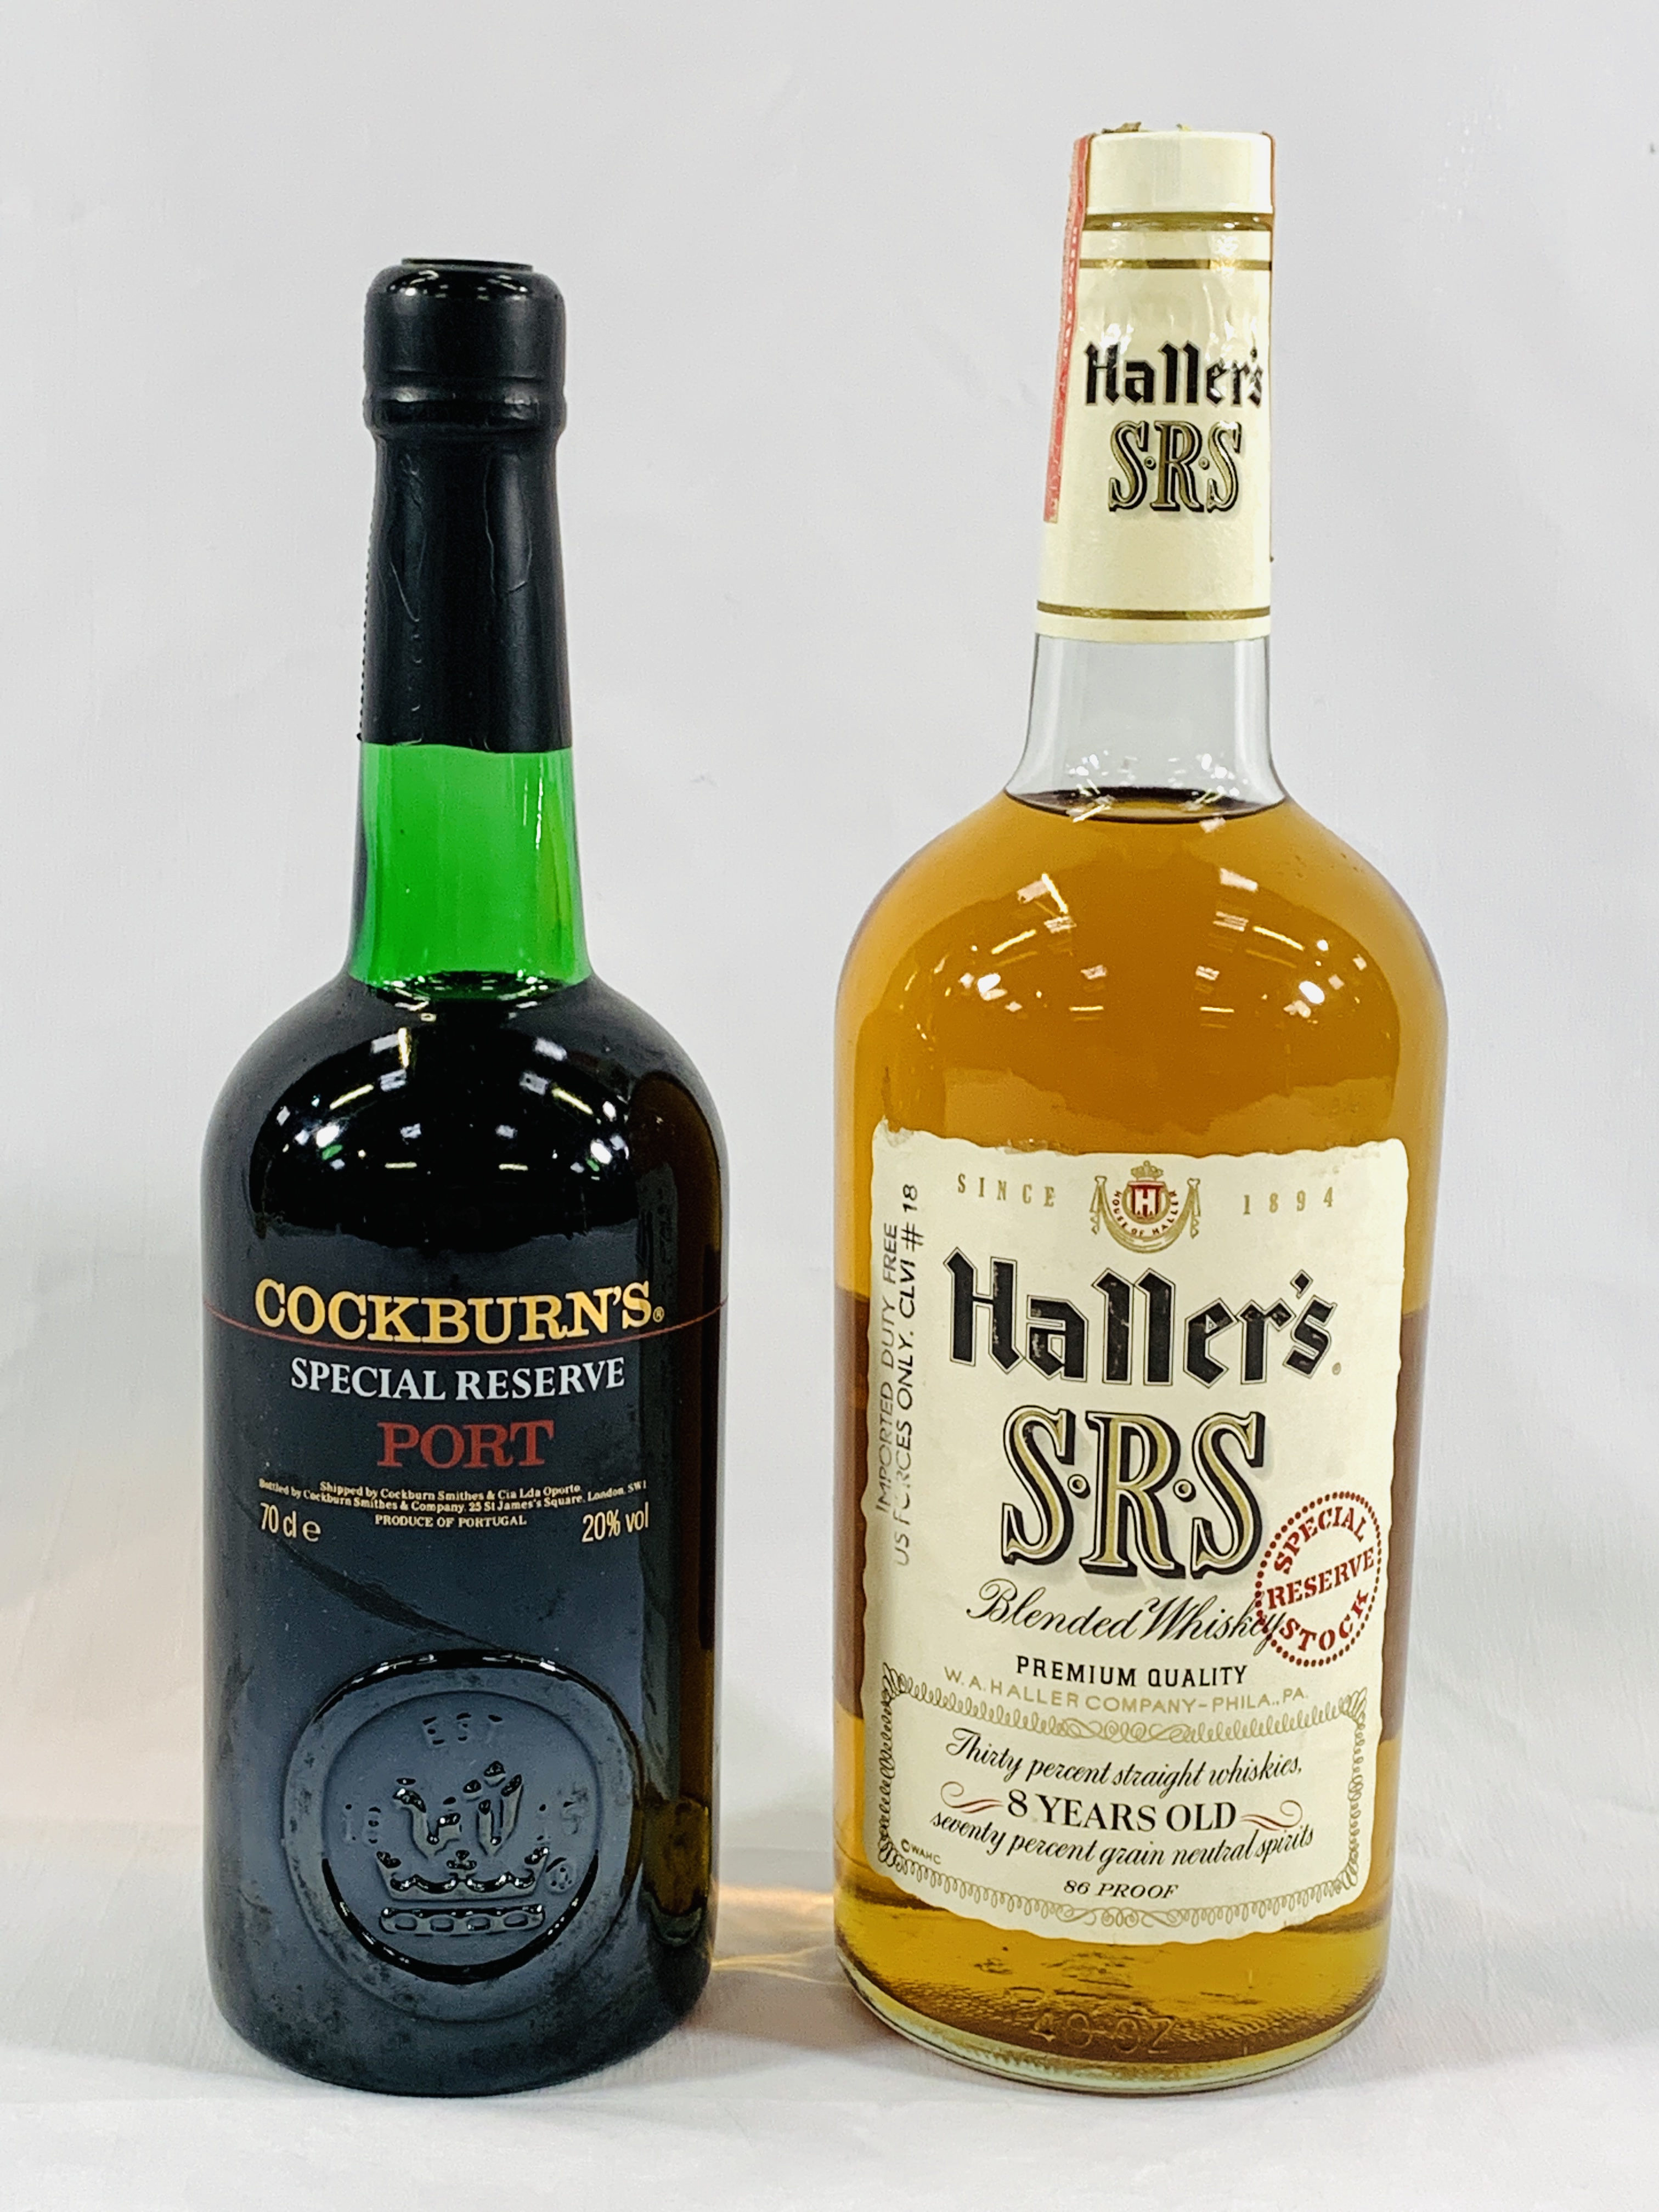 A bottle of Haller's whisky together with a bottle of Cockburn's port - Image 2 of 3